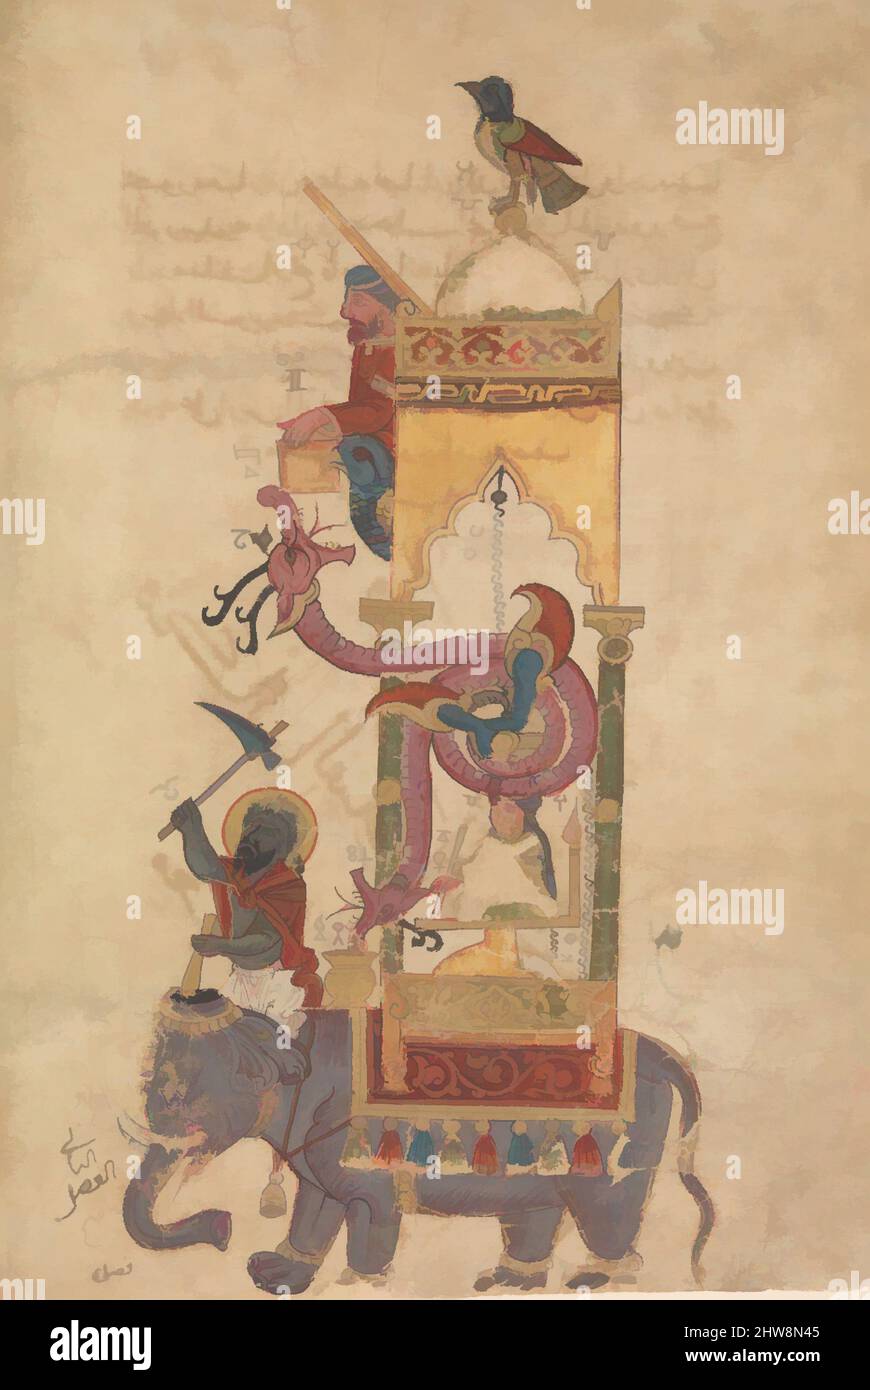 Arte ispirata all'Orologio degli Elefanti, Folio da un libro della conoscenza dei dispositivi meccanici ingegnosi di al-Jazari, datato A.H. 715/A.D. 1315, prodotto in Siria, inchiostro, acquerello opaco, e oro su carta, 11 13/16 x 7 3/4in. (30 x 19,7cm), Codices, questa pagina proviene da un trattato su, opere classiche modernizzate da Artotop con un tuffo di modernità. Forme, colore e valore, impatto visivo accattivante sulle emozioni artistiche attraverso la libertà delle opere d'arte in modo contemporaneo. Un messaggio senza tempo che persegue una nuova direzione selvaggiamente creativa. Artisti che si rivolgono al supporto digitale e creano l'NFT Artotop Foto Stock